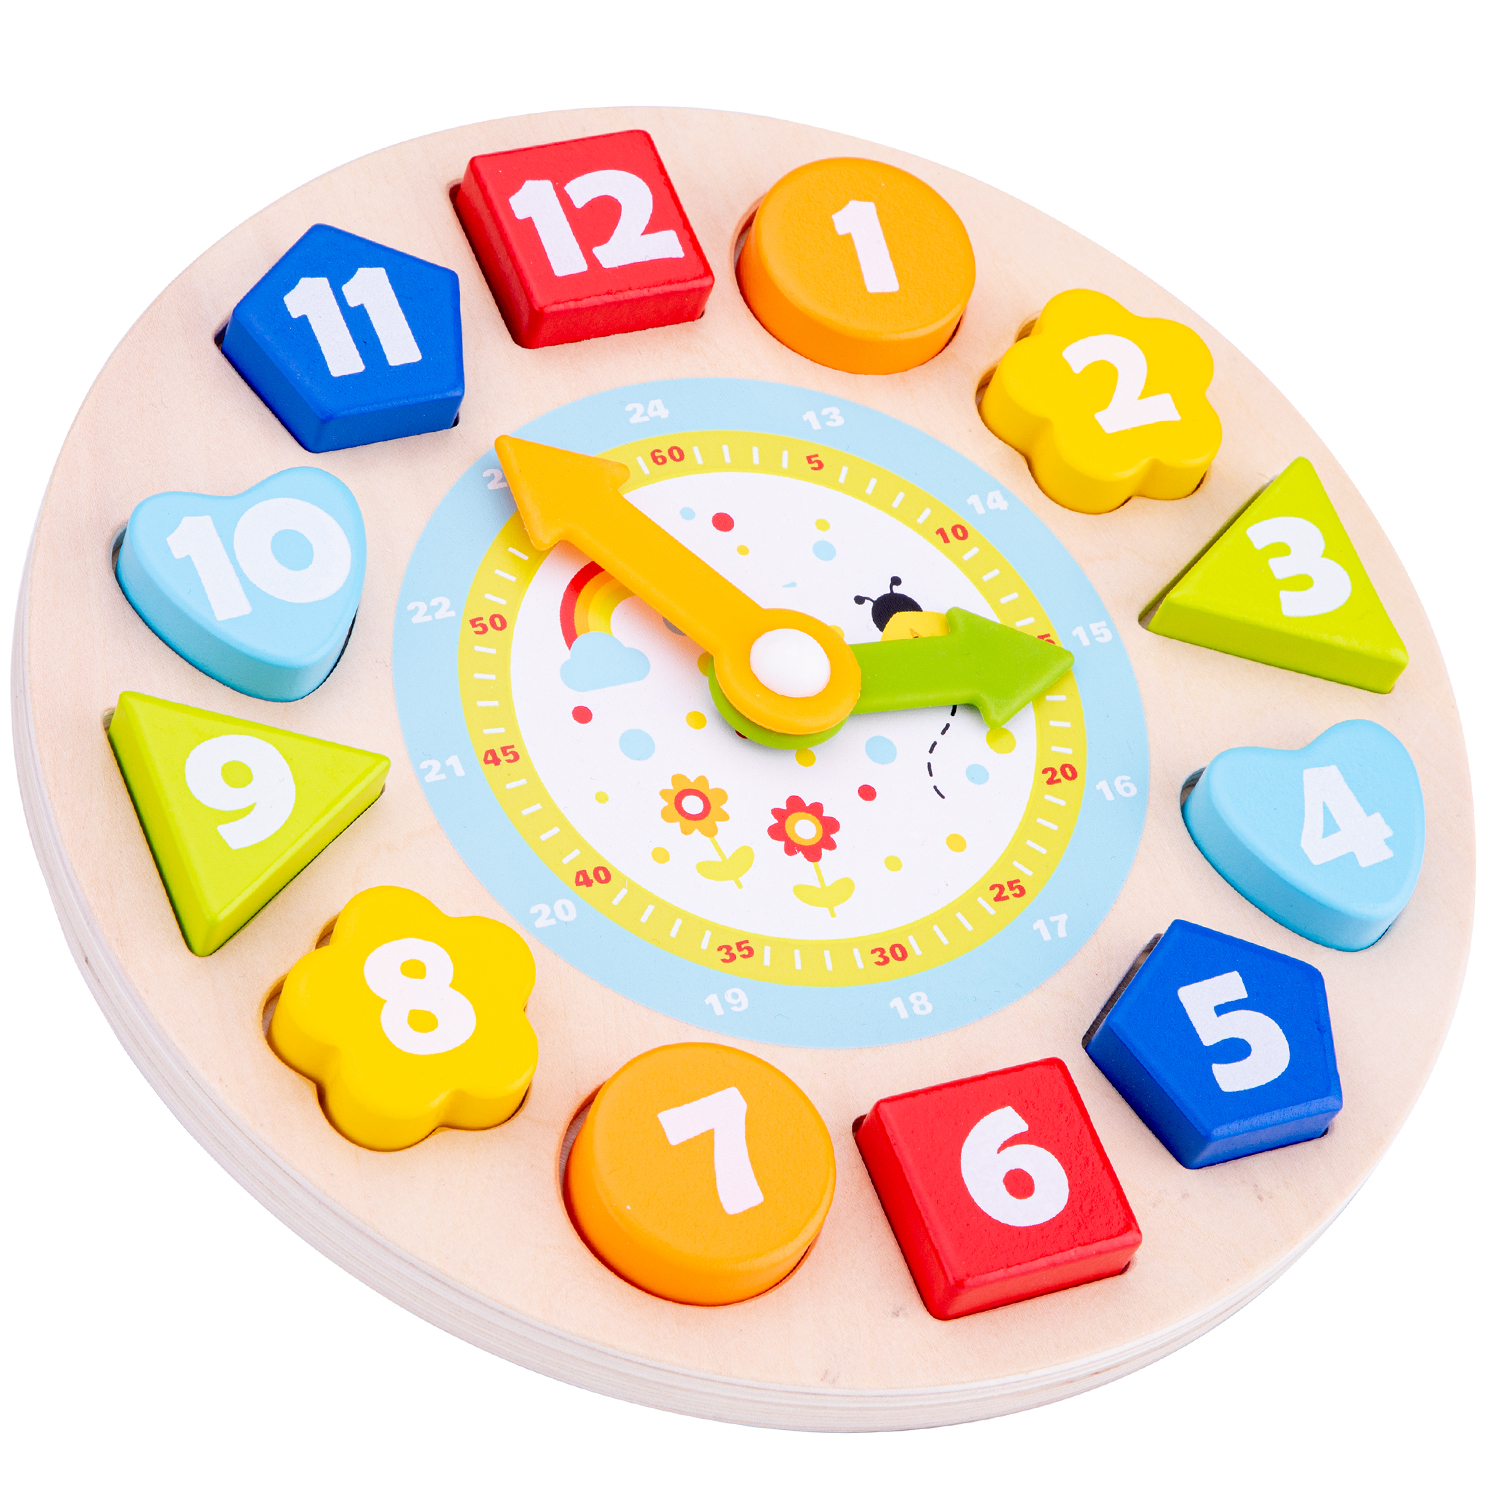 Puzzle Uhr Lernspielzeug für Kinder aus Holz mit Zahlen und Uhrzeiten